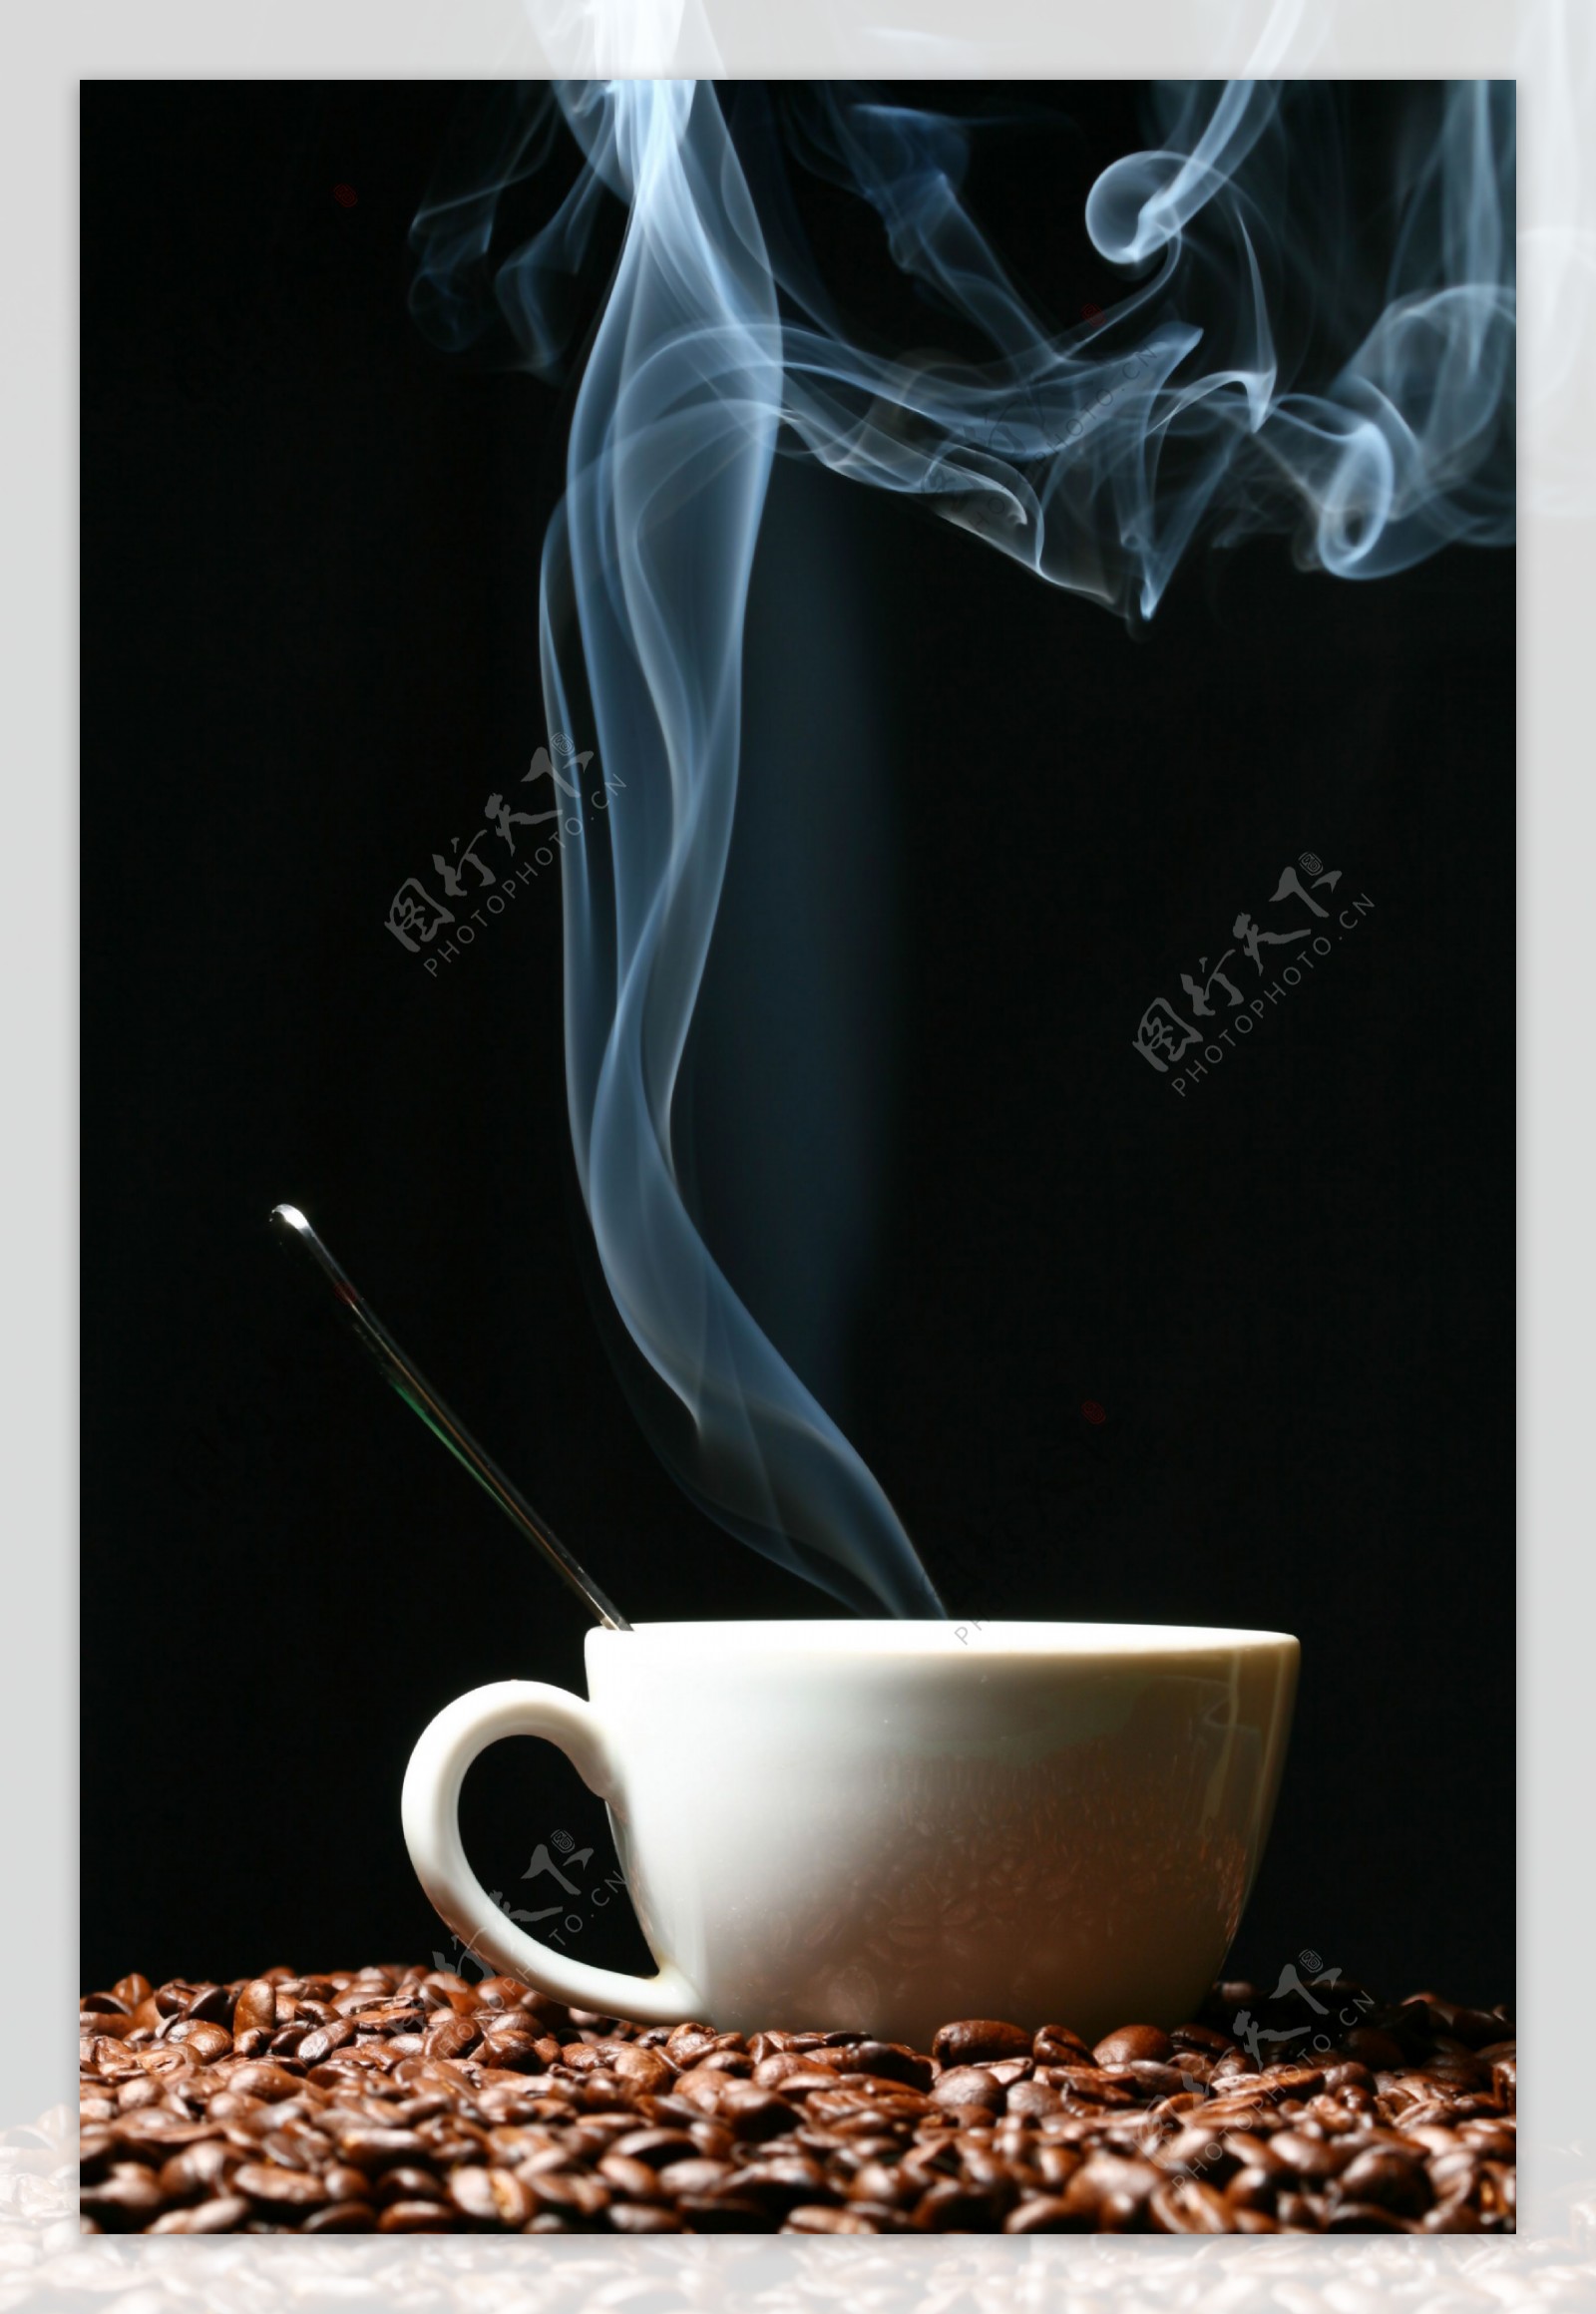 热腾腾的咖啡主题高清图片